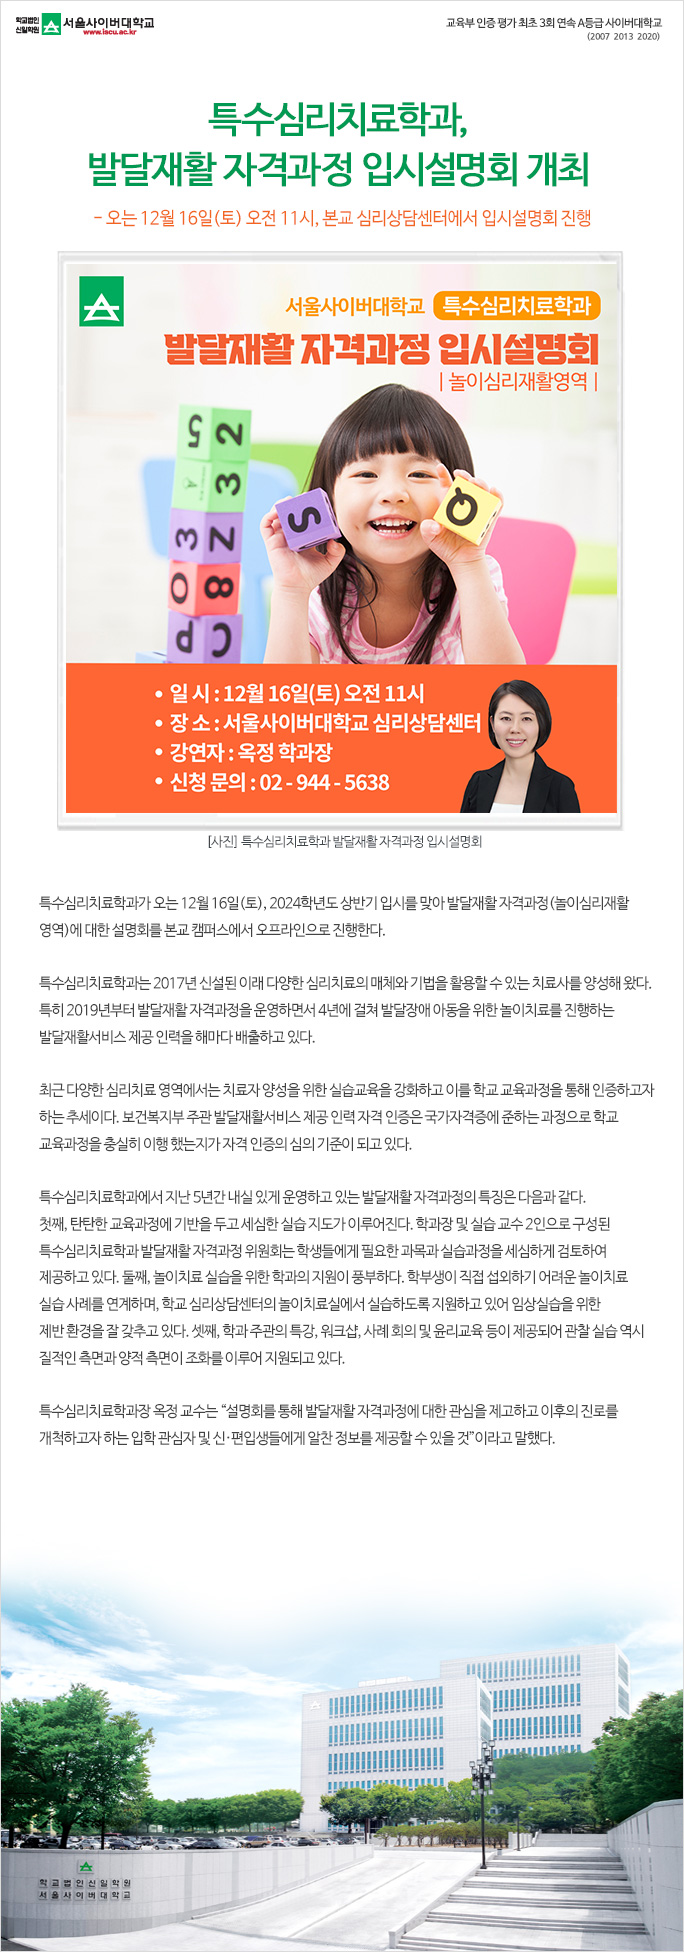 특수심리치료학과, 발달재활 자격과정 입시설명회 개최. 상세내용 하단참고